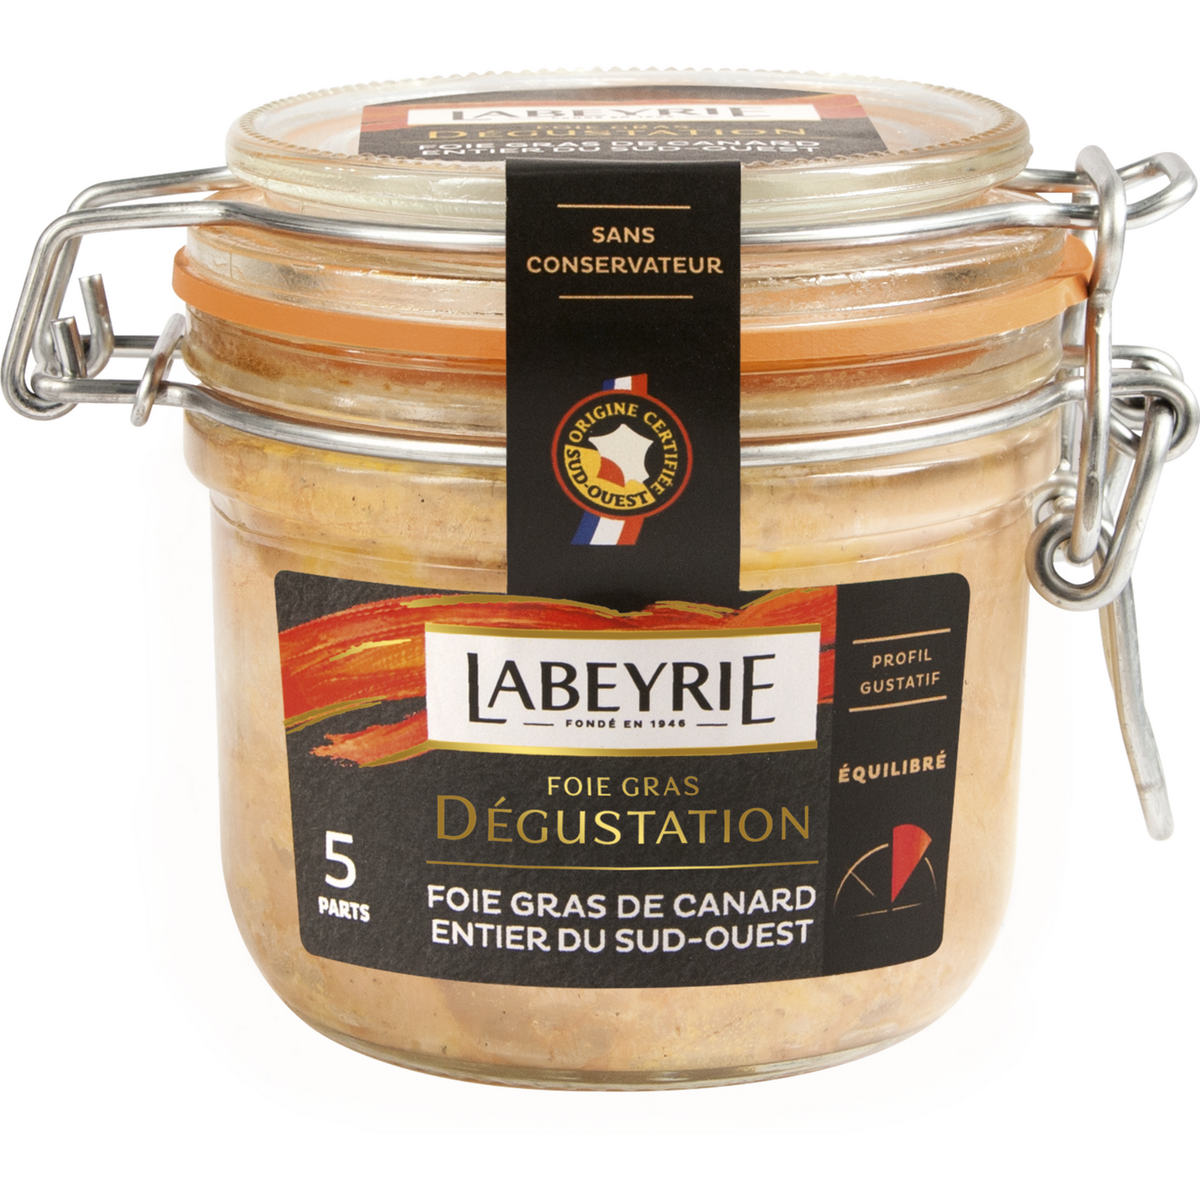 LABEYRIE Foie gras de canard entier du Sud-Ouest bocal 5 portions 190g